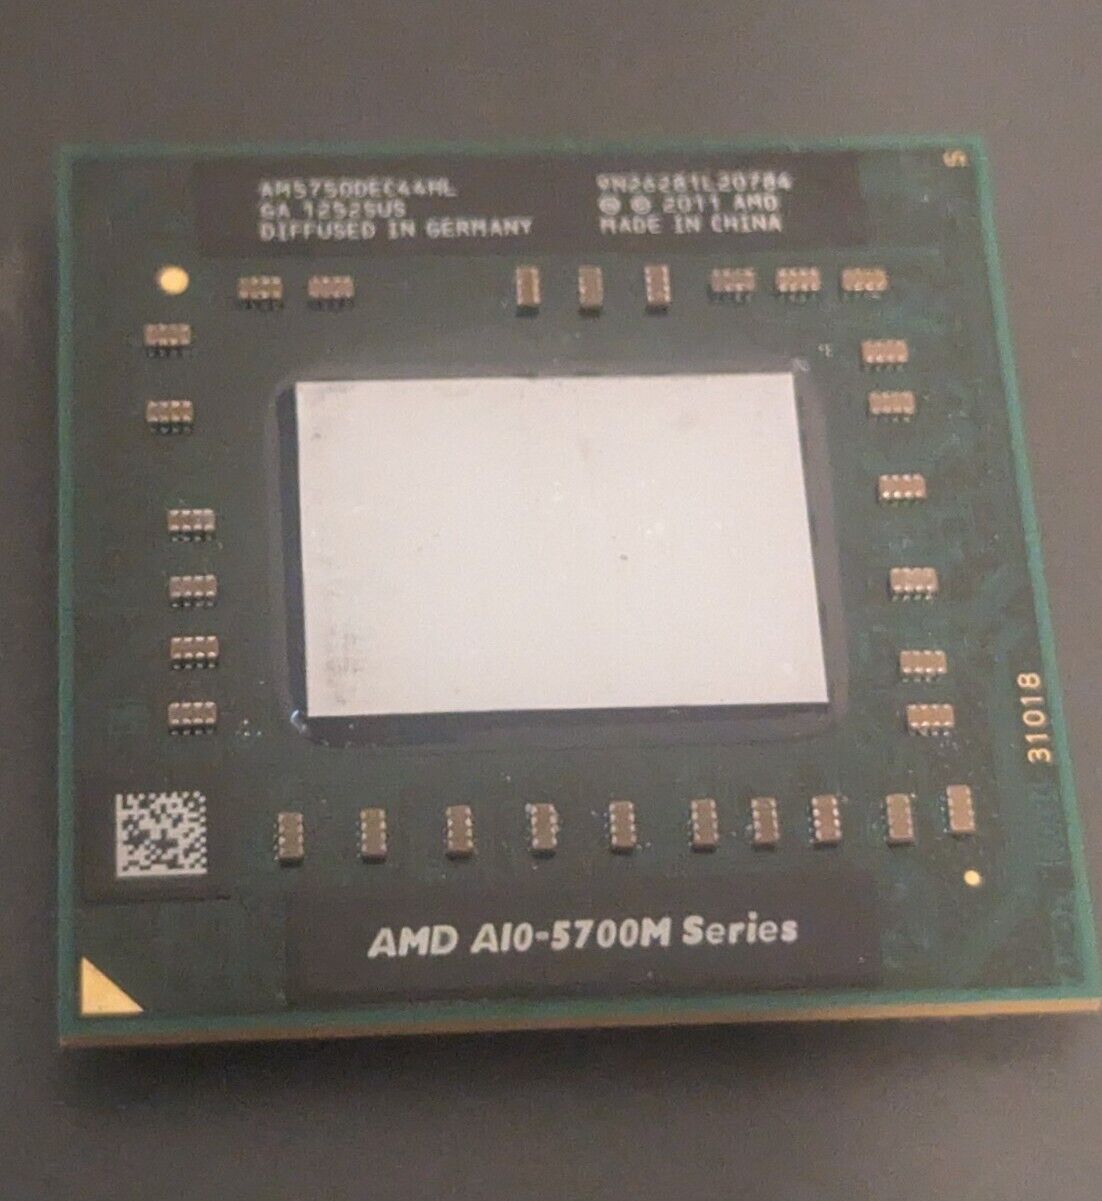 AMD A10 5700M 2.5GHz Quad-Core Laptop CPU AM5750DEC44HL